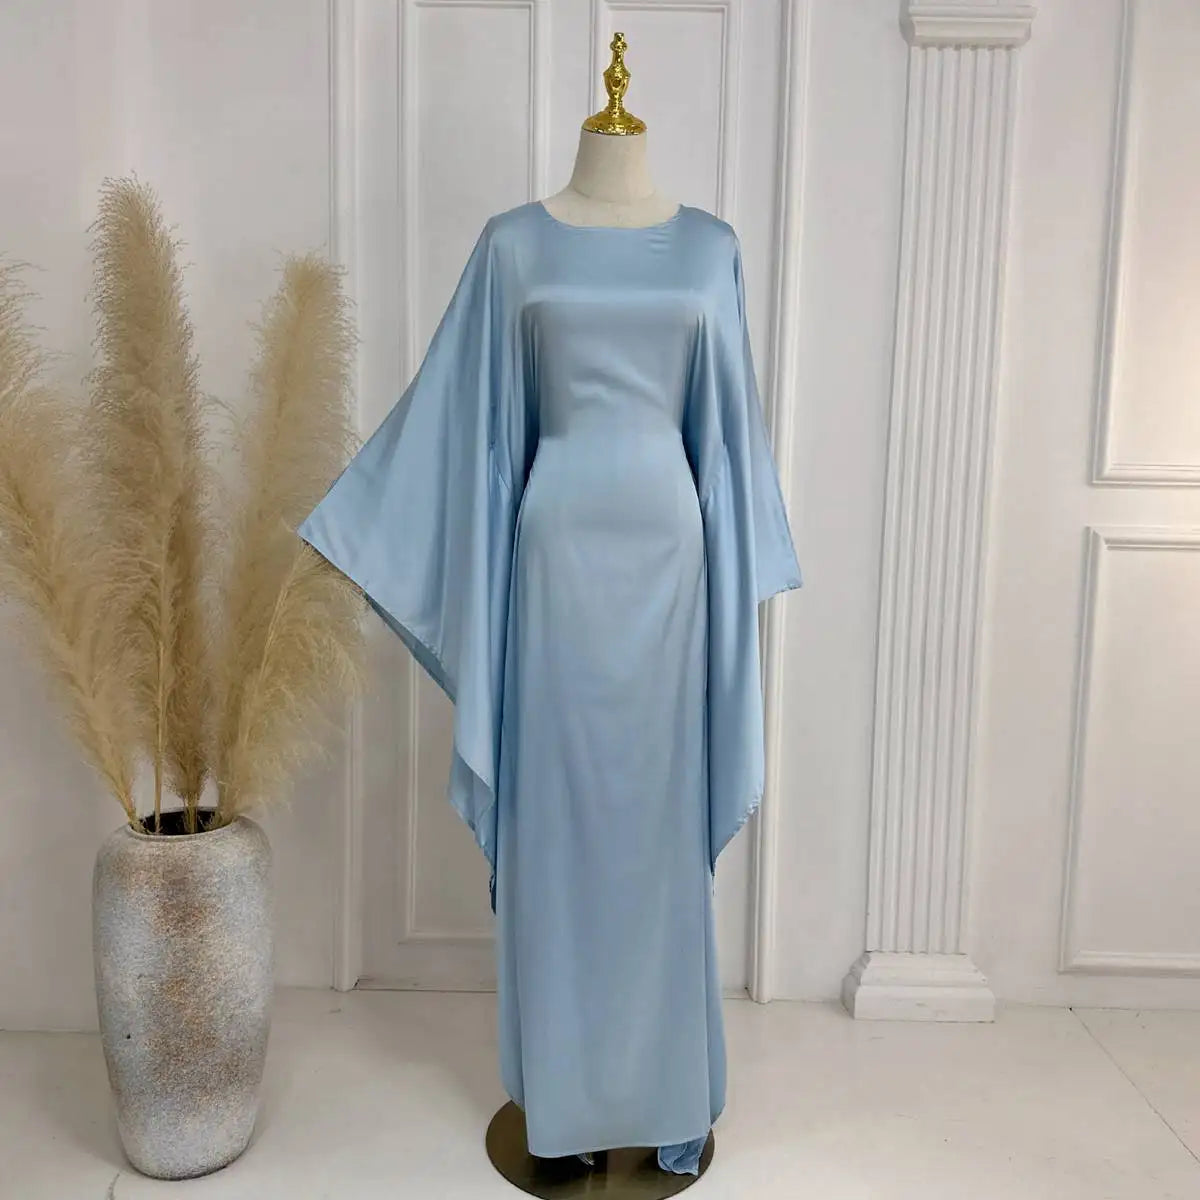 Gleam Satin Batwing Sleeve Women Farasha Abaya Dress